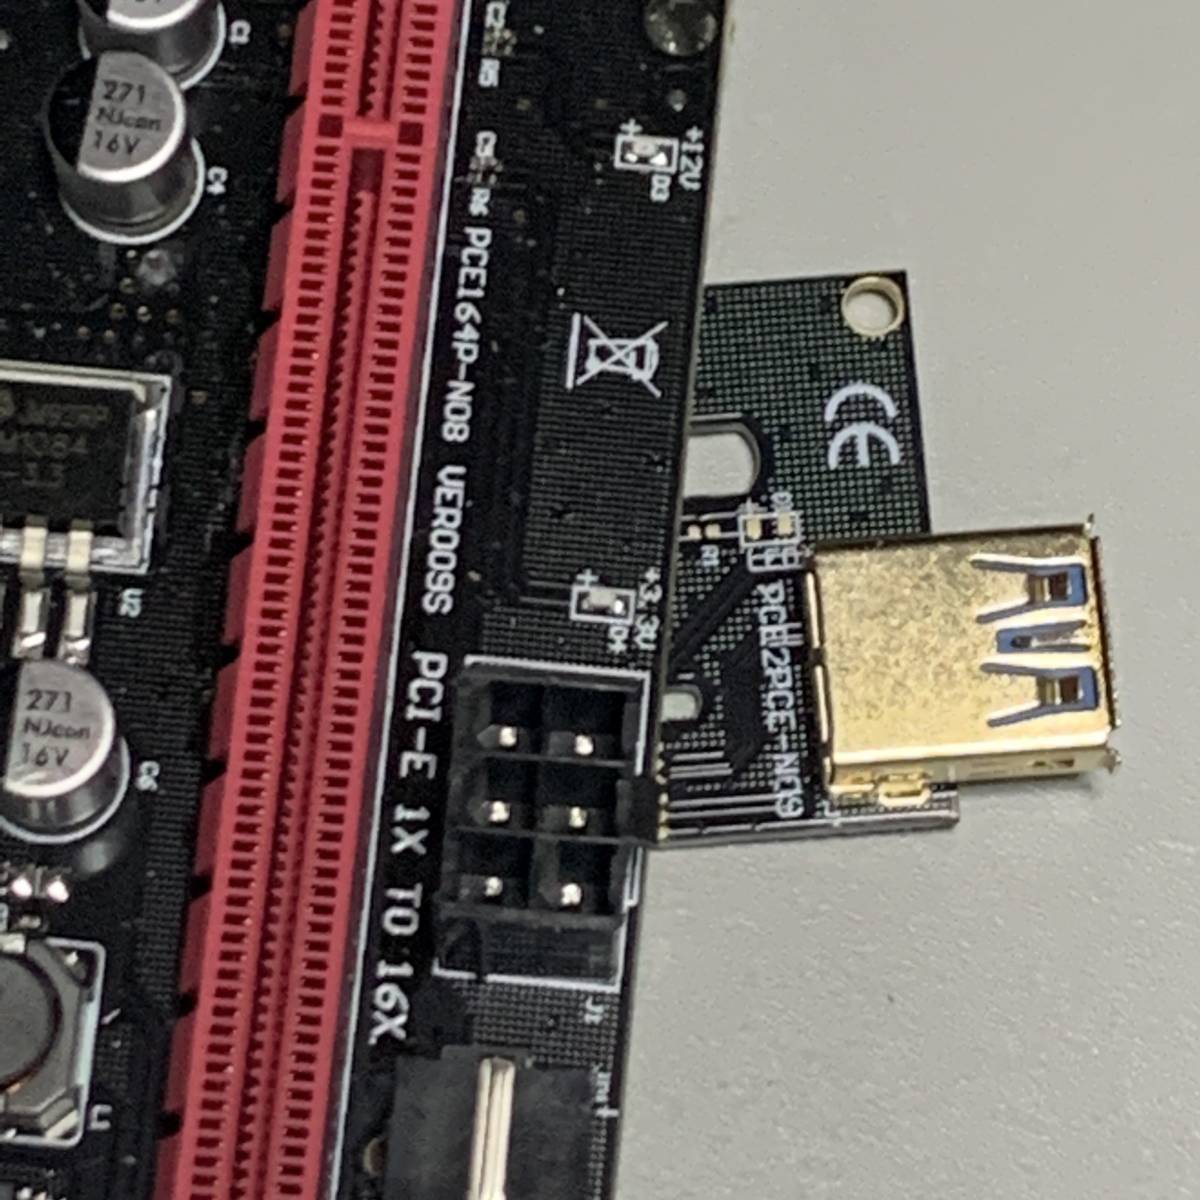 【中古】ライザーカード 4個セット PCIE1X to 16X / VER009S 2個 VER008S 1個 VER006 1個 / 電源コネクタ変換ケーブル・USBケーブル付属